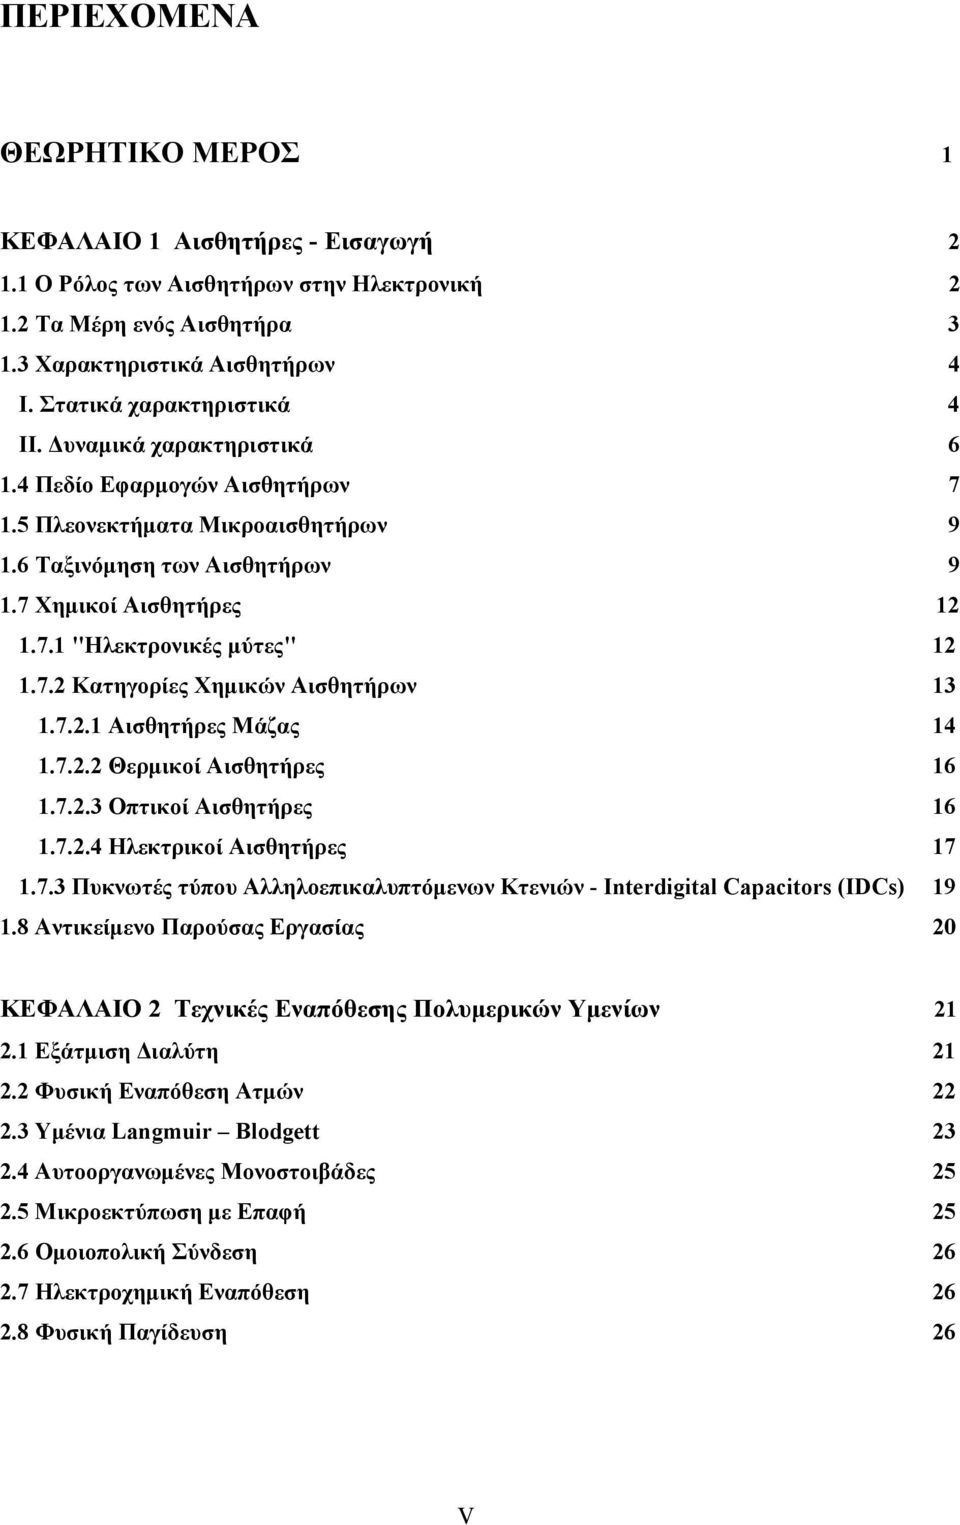 7.2 Κατηγορίες Χημικών Αισθητήρων 13 1.7.2.1 Αισθητήρες Μάζας 14 1.7.2.2 Θερμικοί Αισθητήρες 16 1.7.2.3 Οπτικοί Αισθητήρες 16 1.7.2.4 Ηλεκτρικοί Αισθητήρες 17 1.7.3 Πυκνωτές τύπου Αλληλοεπικαλυπτόμενων Κτενιών - Interdigital Capacitors (IDCs) 19 1.